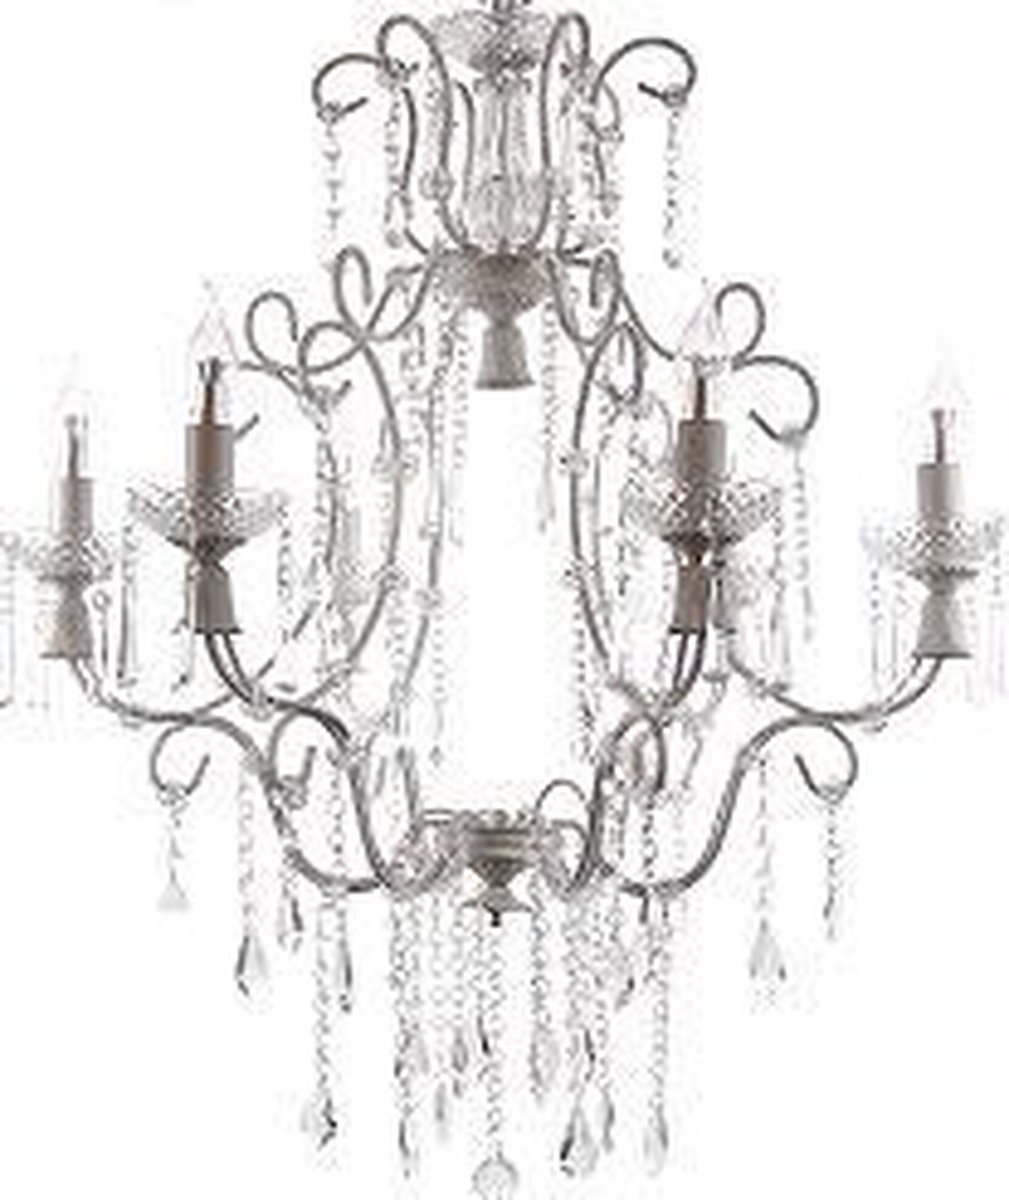 Kroon-hanglamp met glas kristal elementen crème kleurig frame